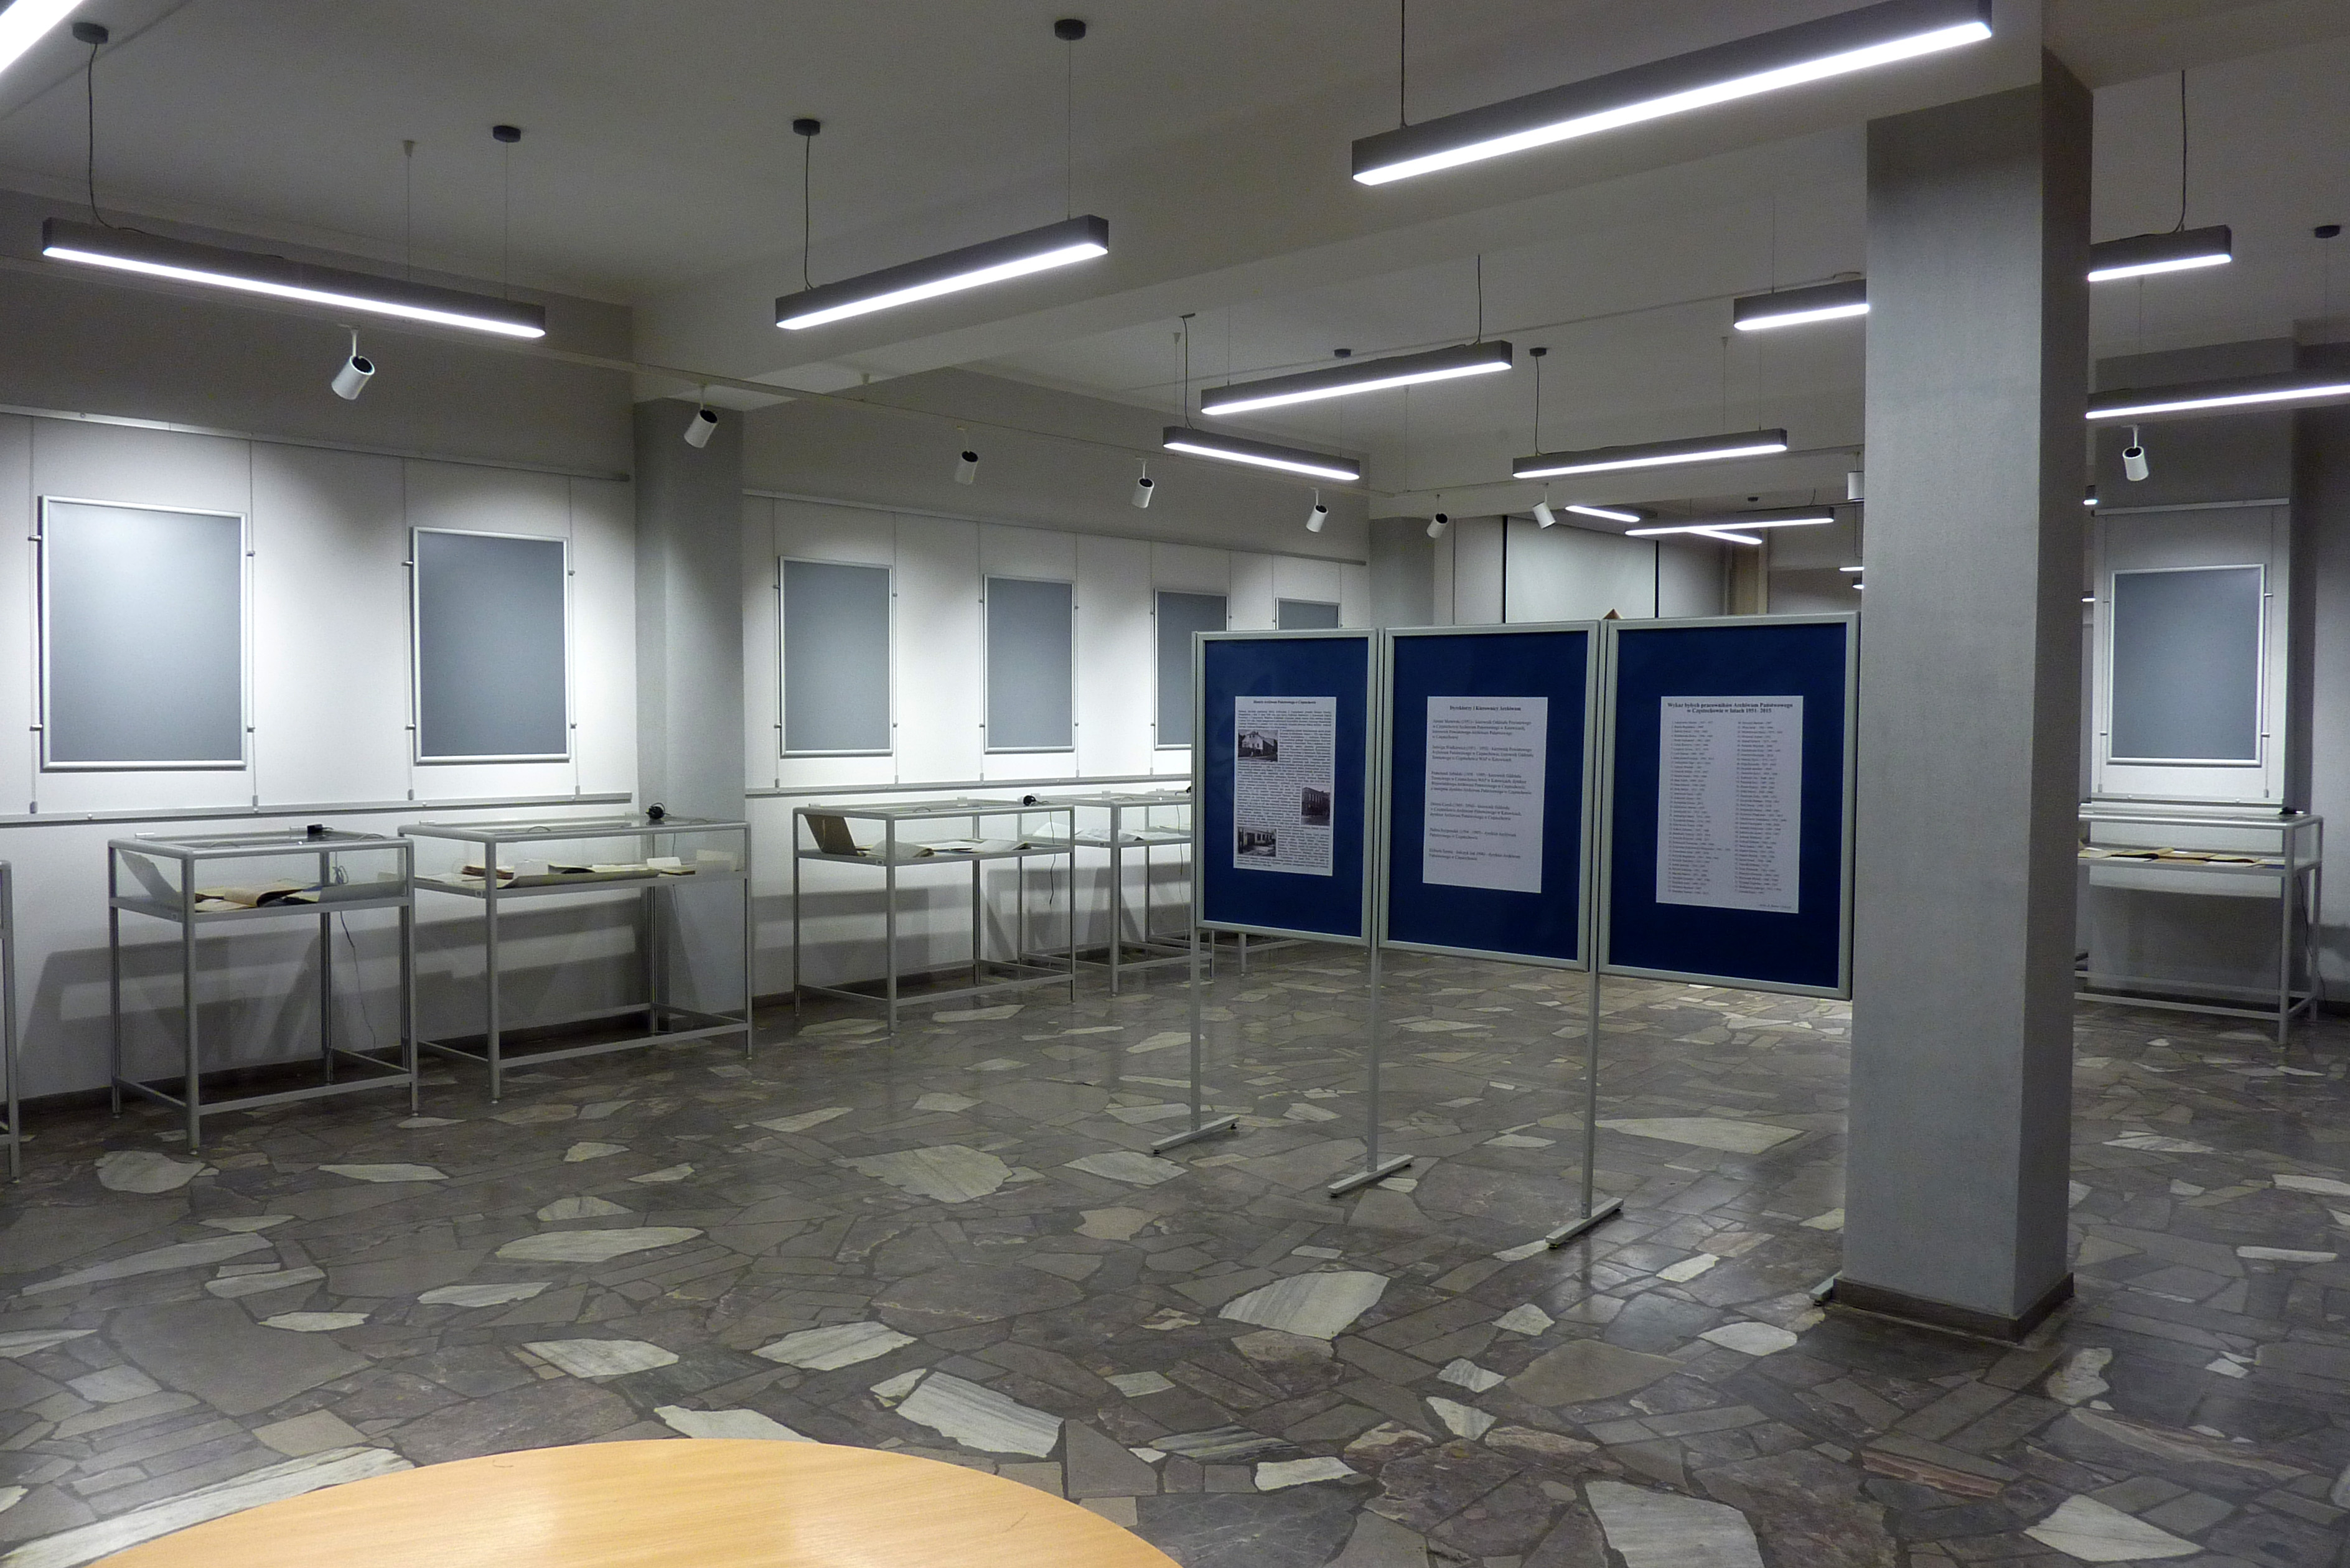 Duża oświetlona sala z gablotami i tablicami do prezentowania materiałów archiwalnych.